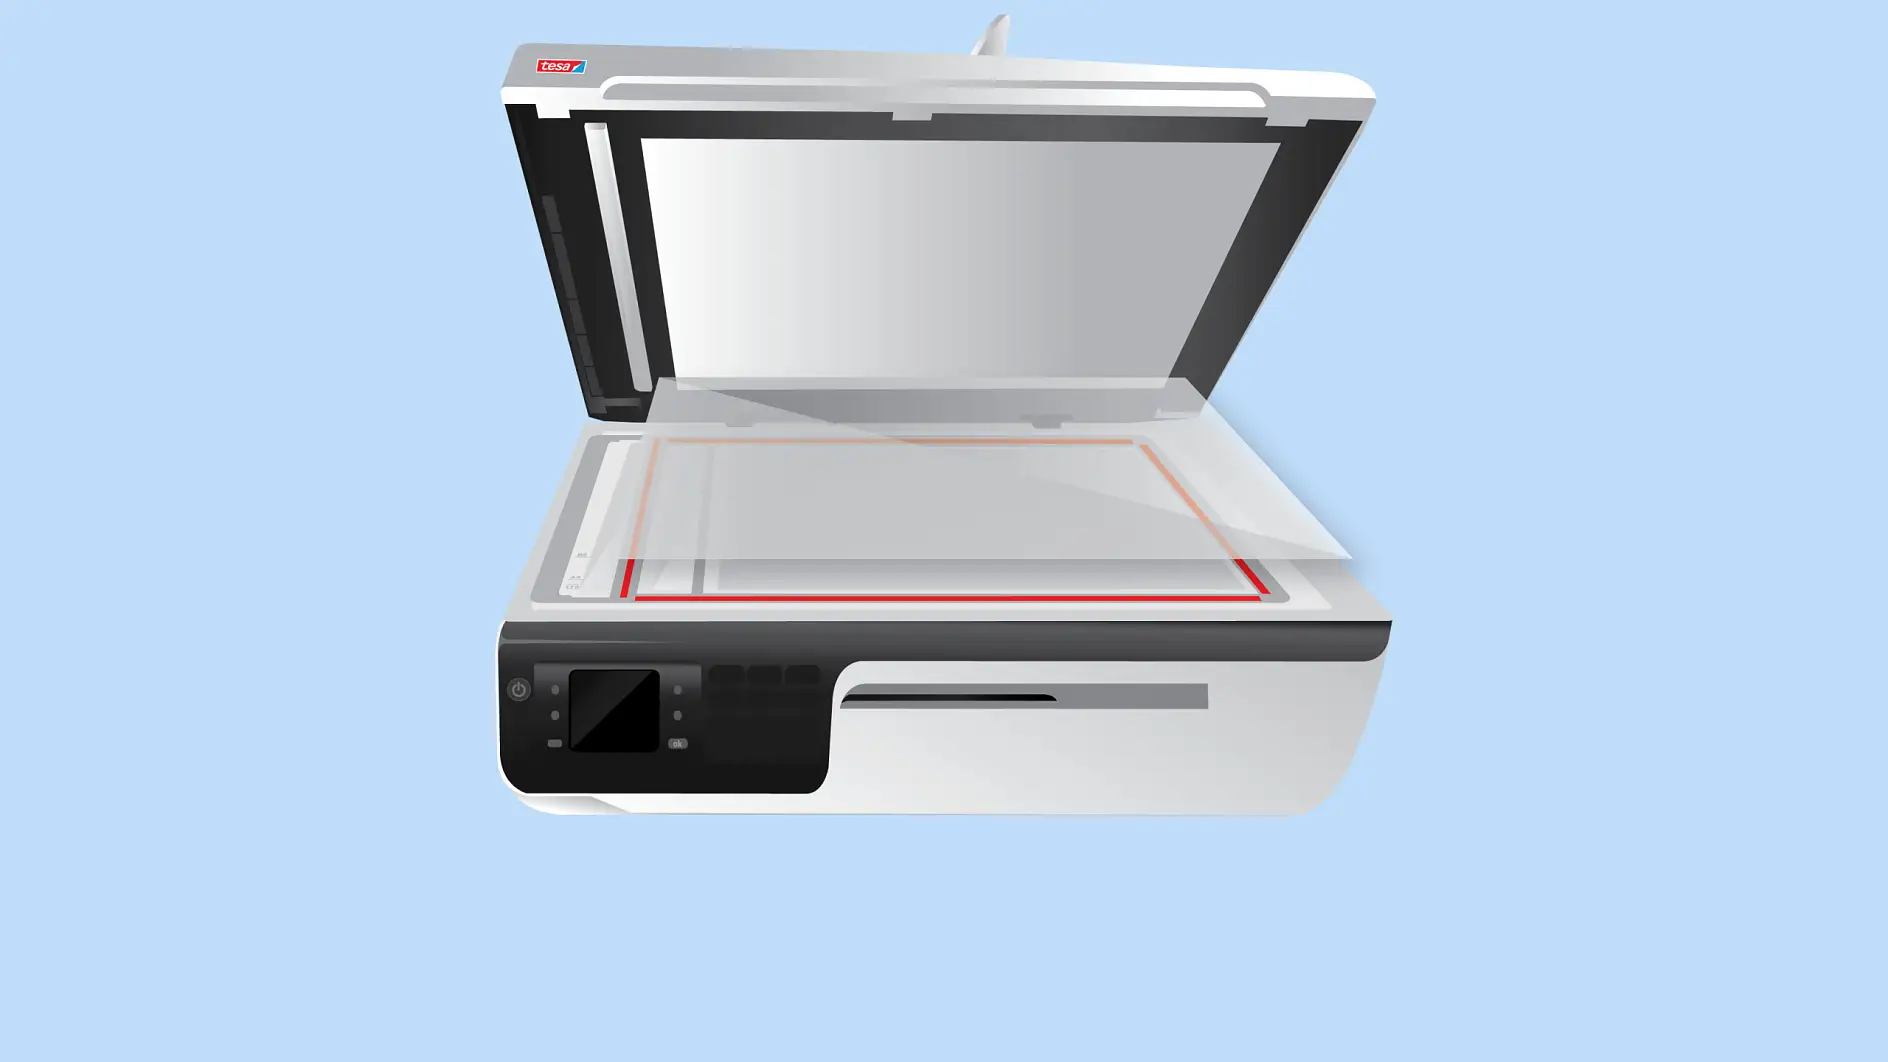 Skla skenerů se na tělo tiskárny připevňují pomocí oboustranné pásky.